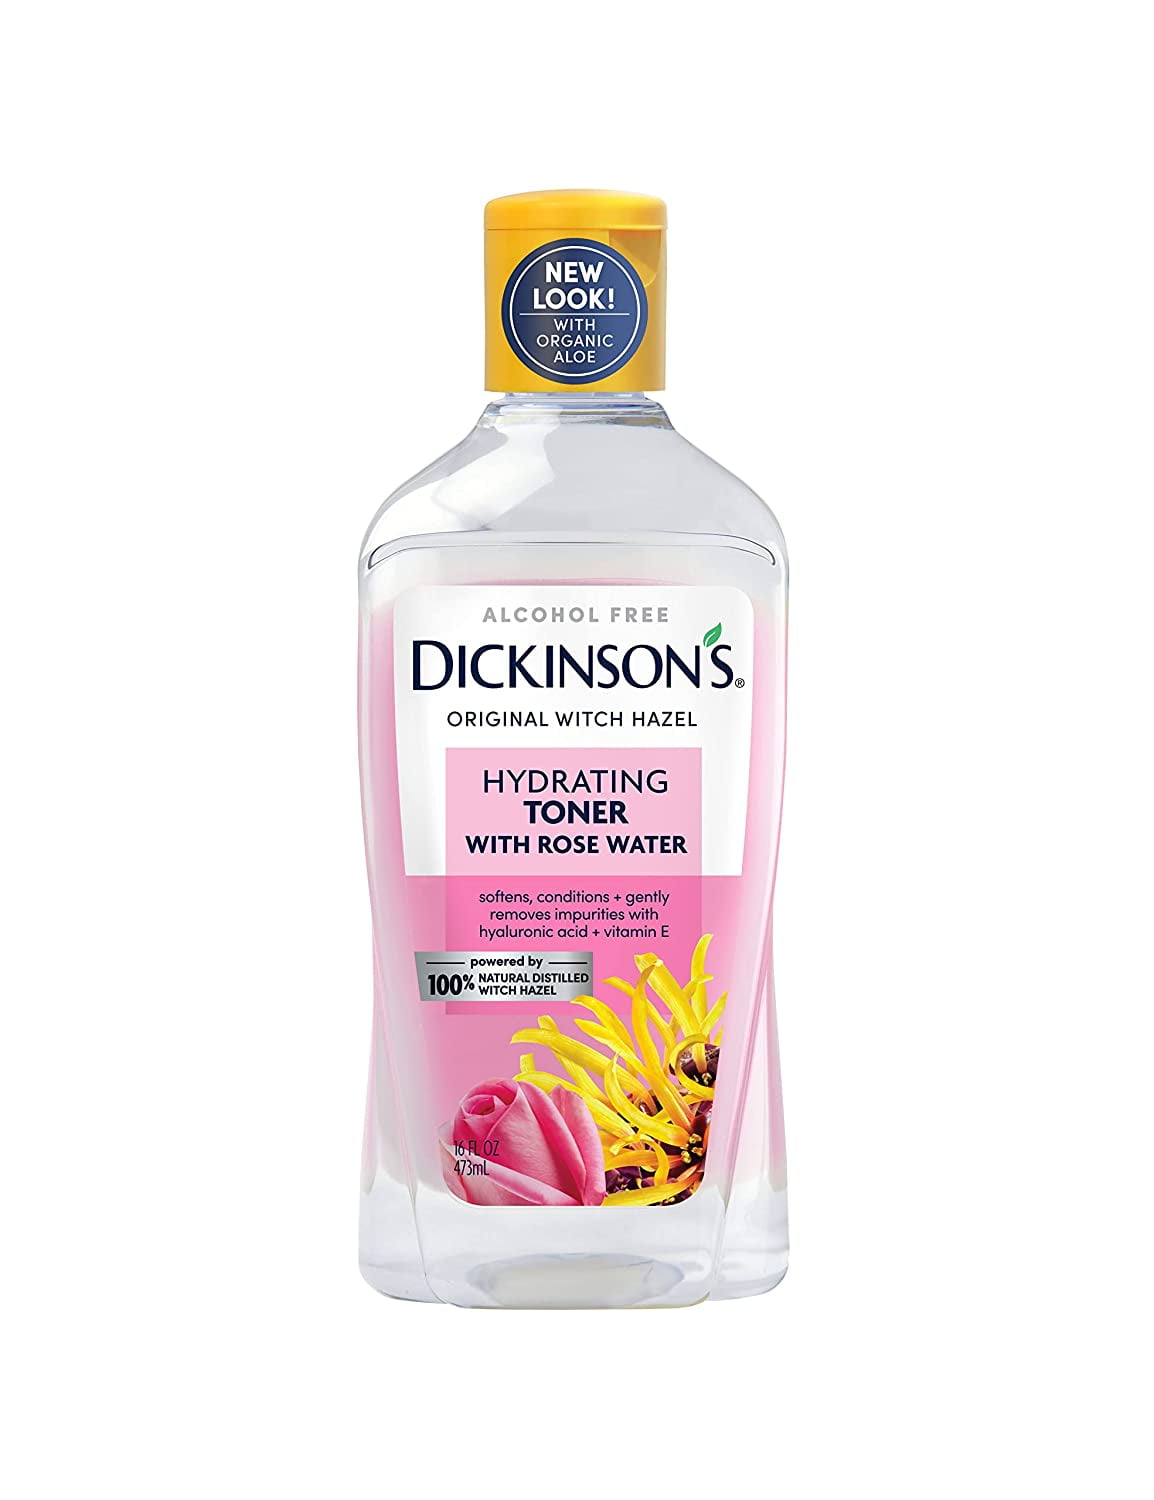 Dickinson's Enhanced Witch Hazel Toner with Alcohol Free, 98% Natural Formula, 16 fl oz Walmart.com